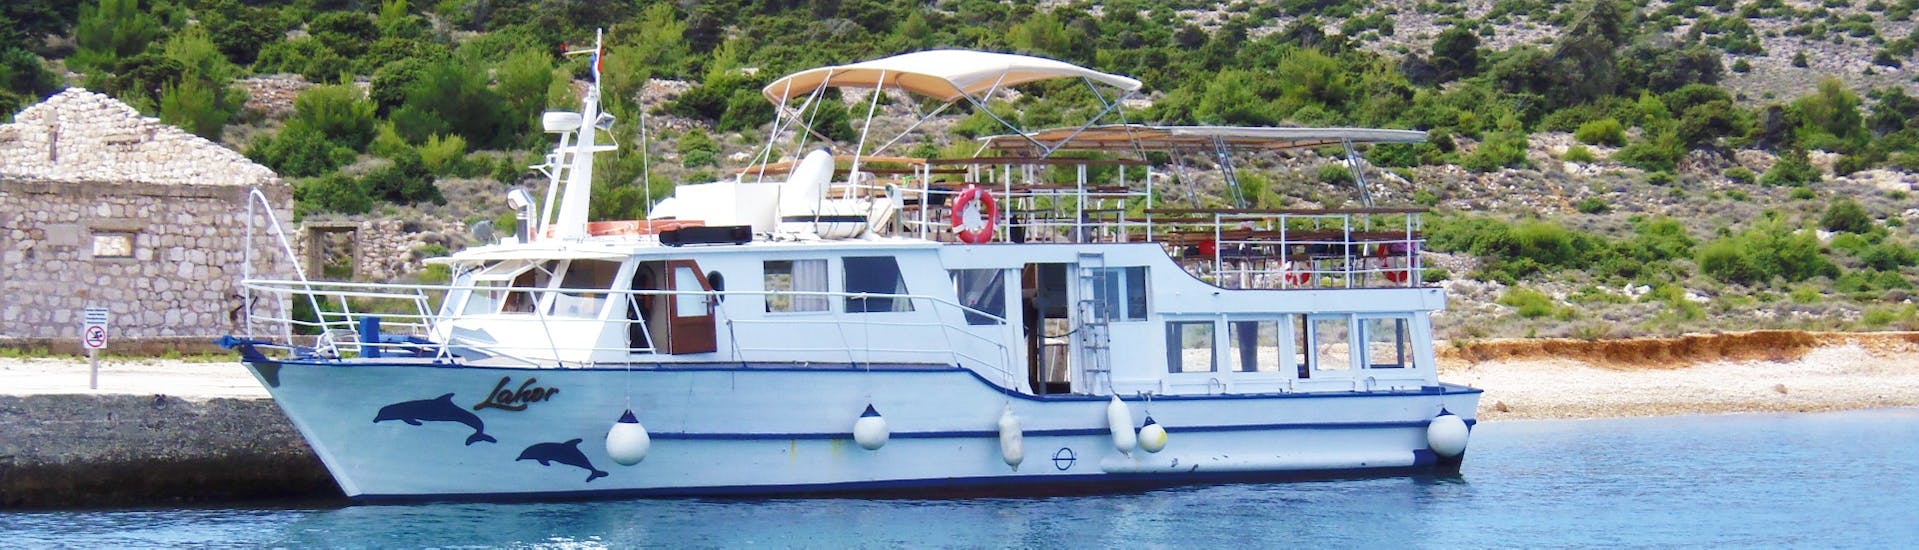 Die Bootstour von Punat zur Insel Plavnik ist abfahrtbereit.